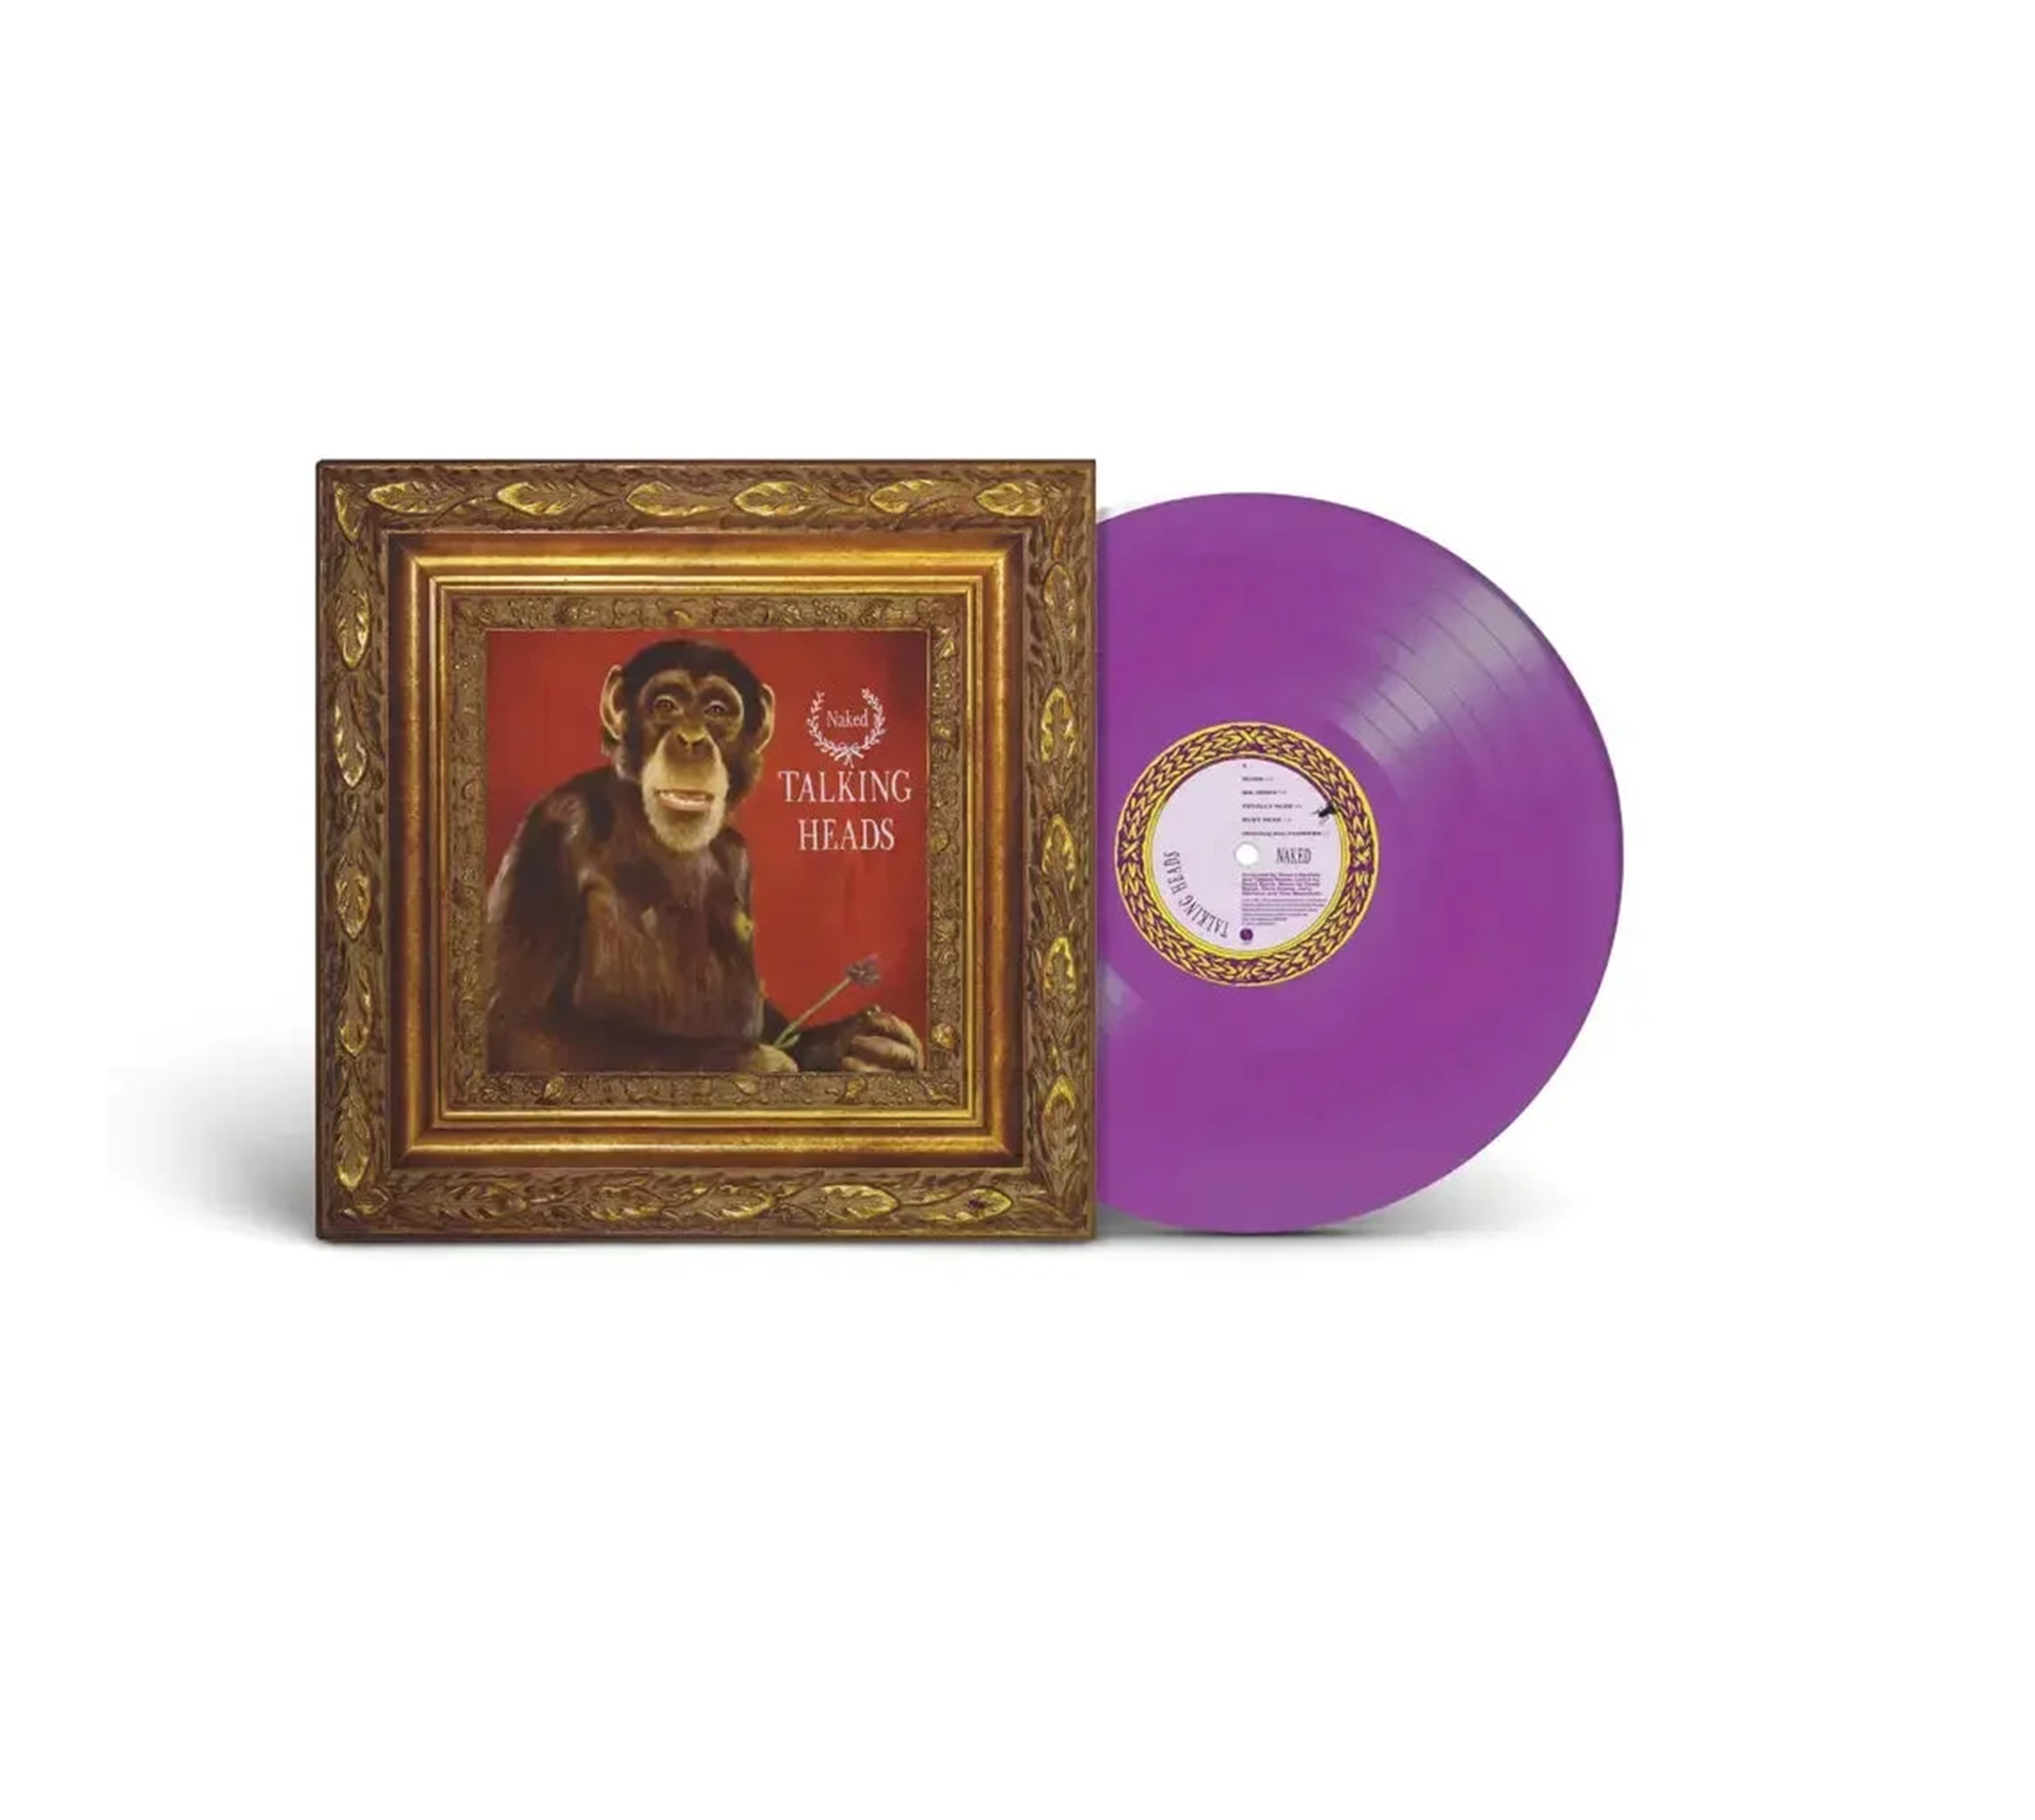 Talking Heads - Naked: Violet Vinyl LP